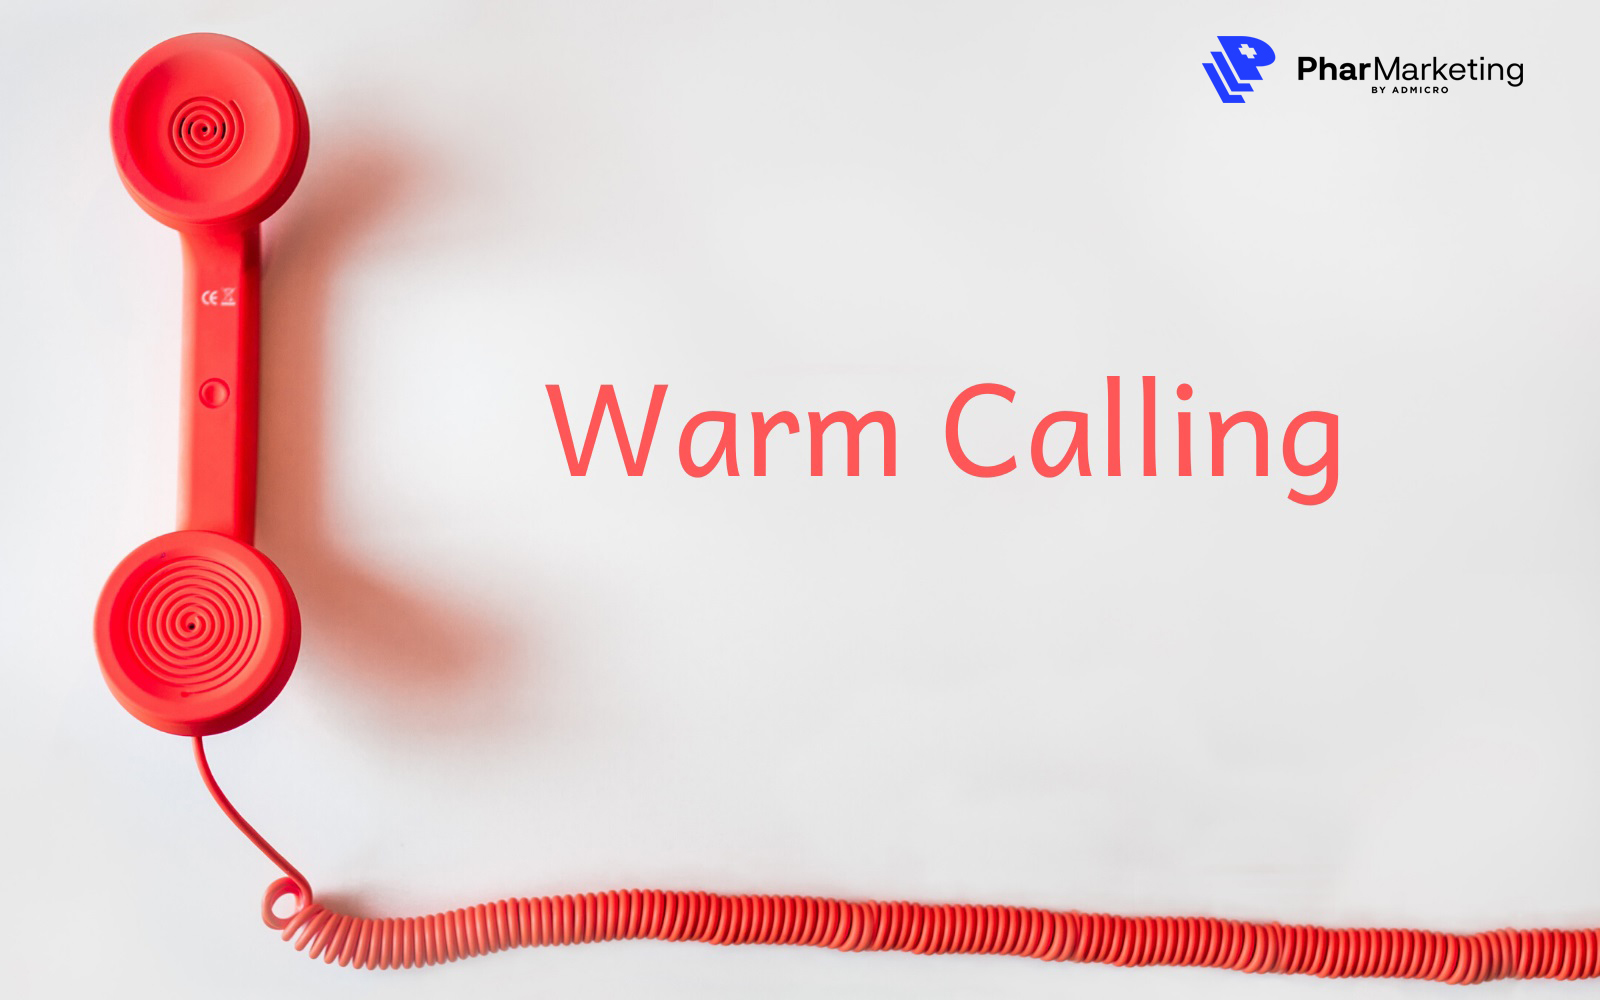 Warm calling giúp doanh nghiệp tăng doanh thu bán hàng